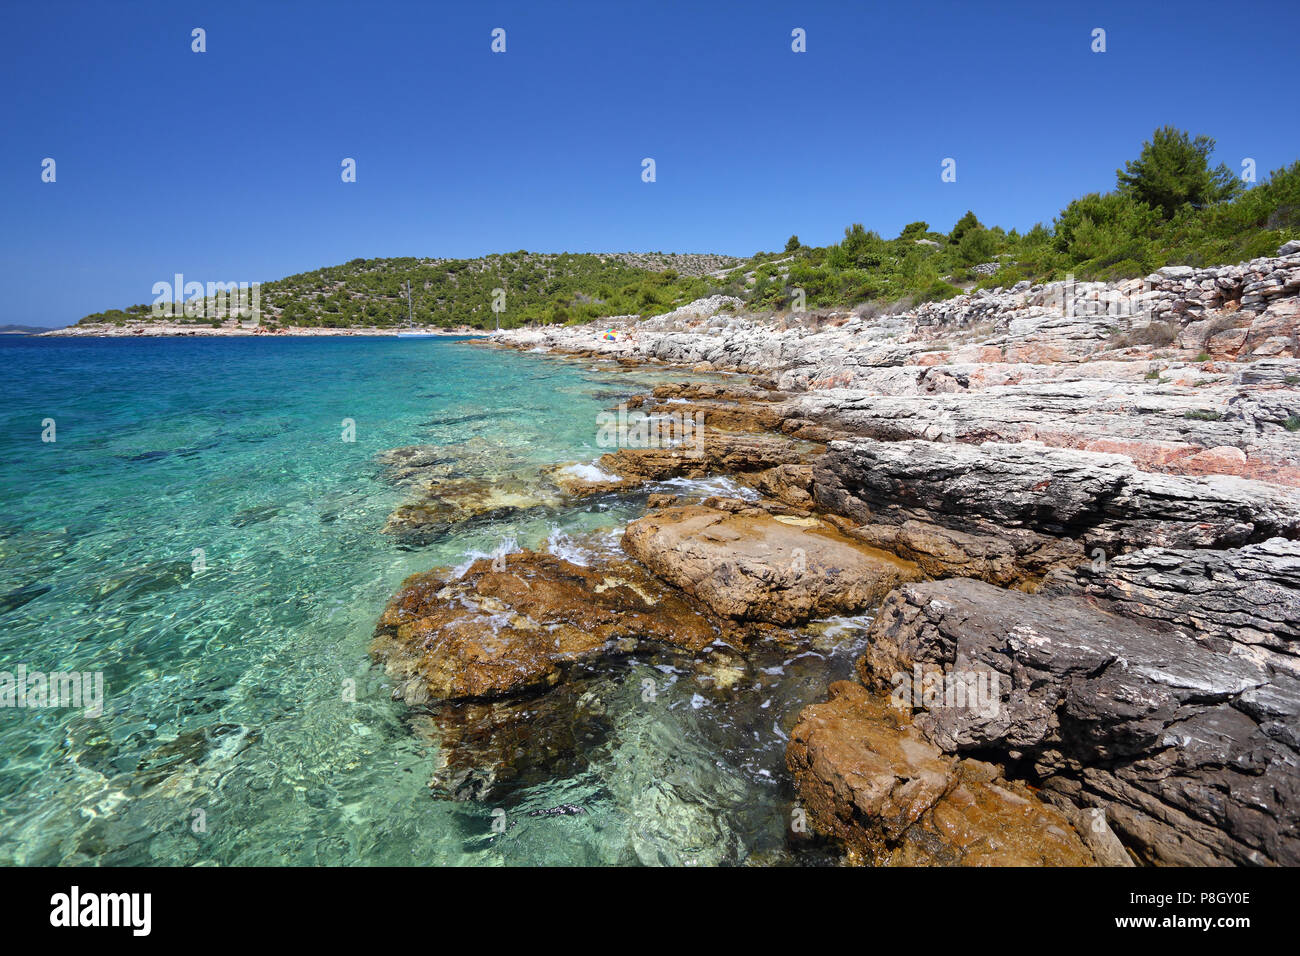 Kroatien - schönen mediterranen Küstenlandschaft in Dalmatien. Murter Insel Strand - Adria. Stockfoto